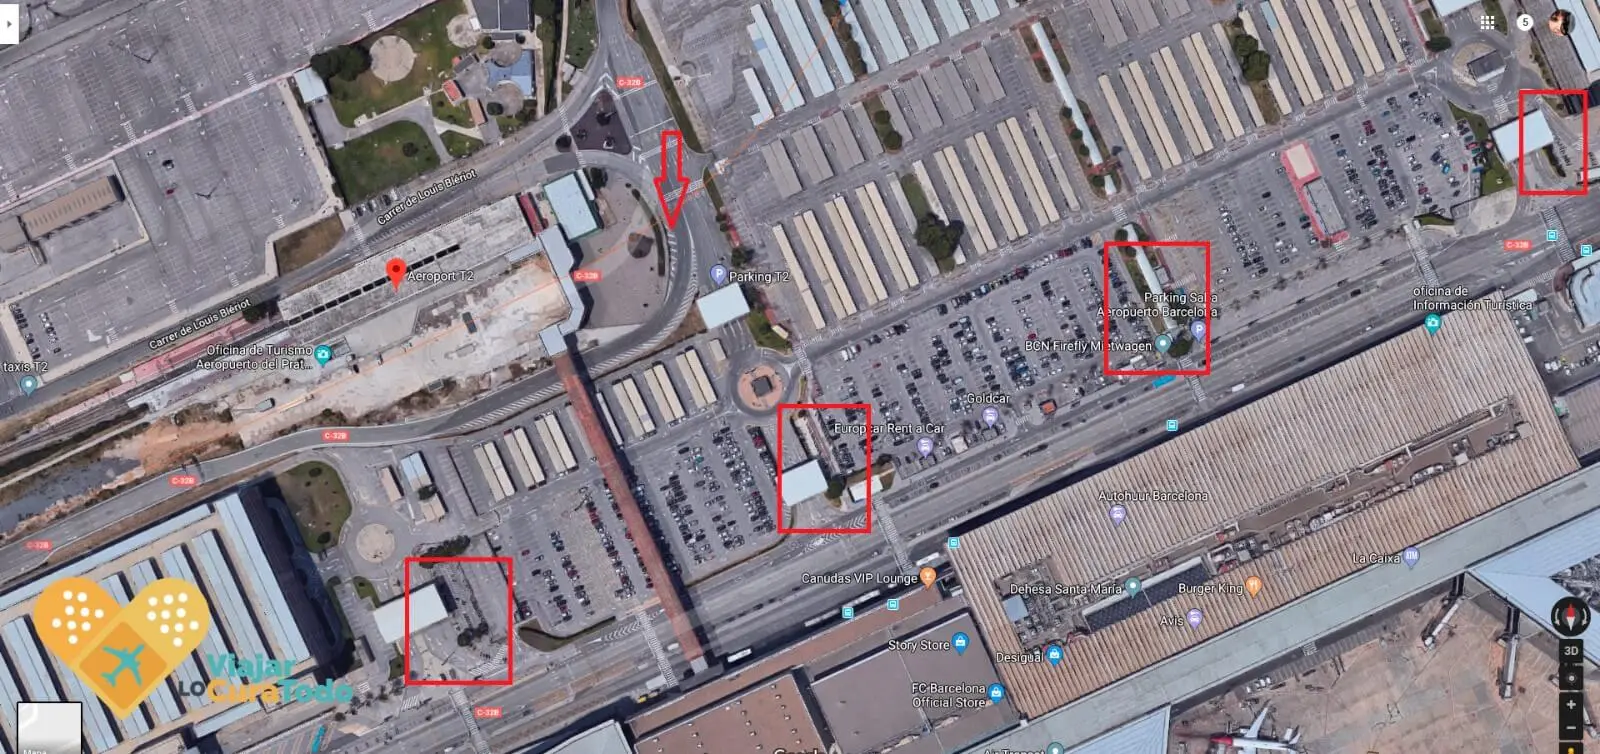 aparcar moto aeropuerto barcelona - Cómo pagar parking AENA con VIA T